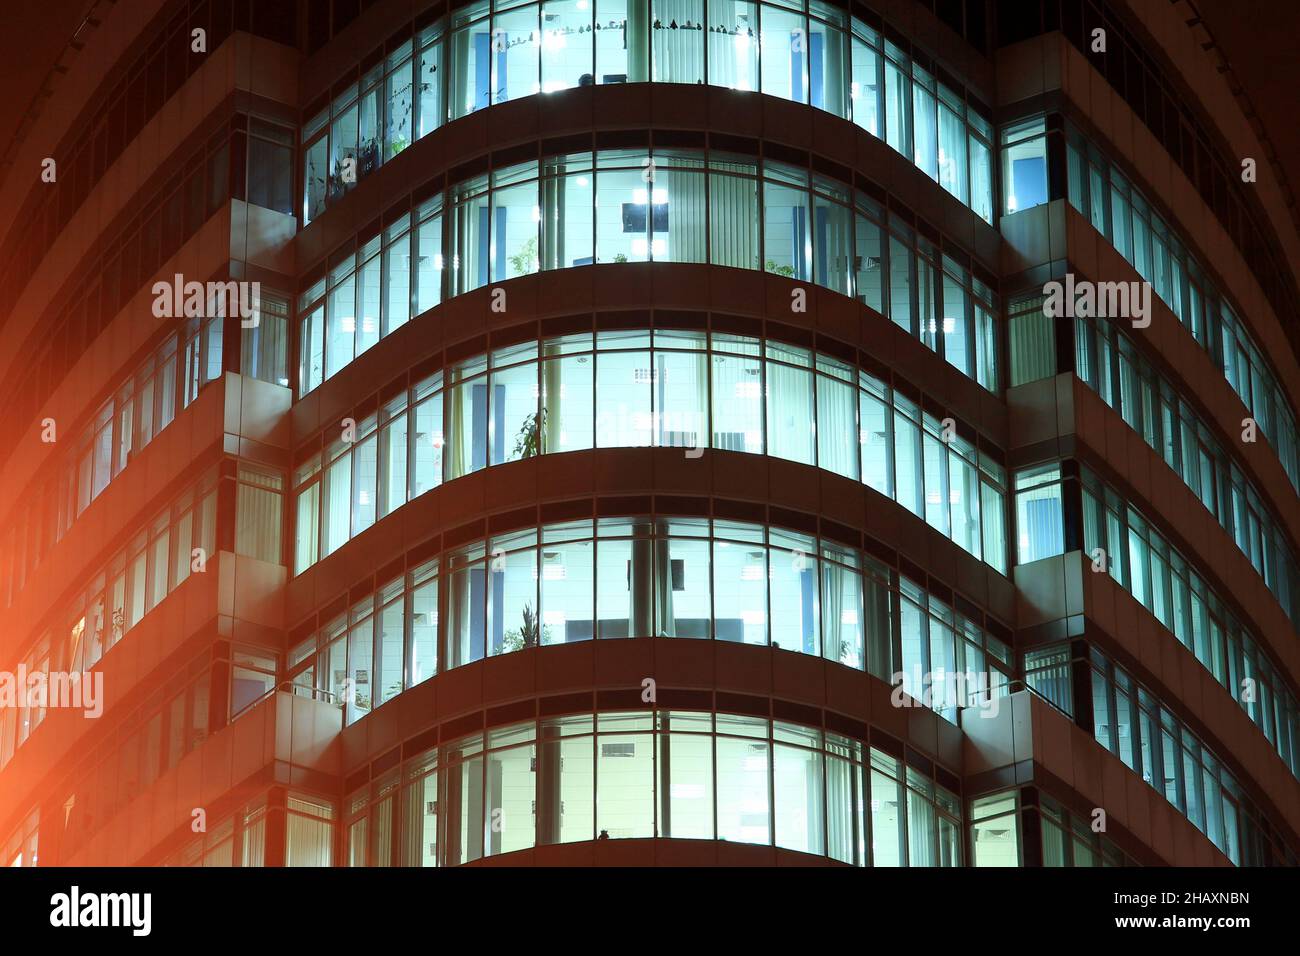 La façade d'un bâtiment en verre rond avec de grandes fenêtres panoramiques et des balcons la nuit, les fenêtres brillent dans l'obscurité.Dnipro City, Dnepr, Ukraine Banque D'Images